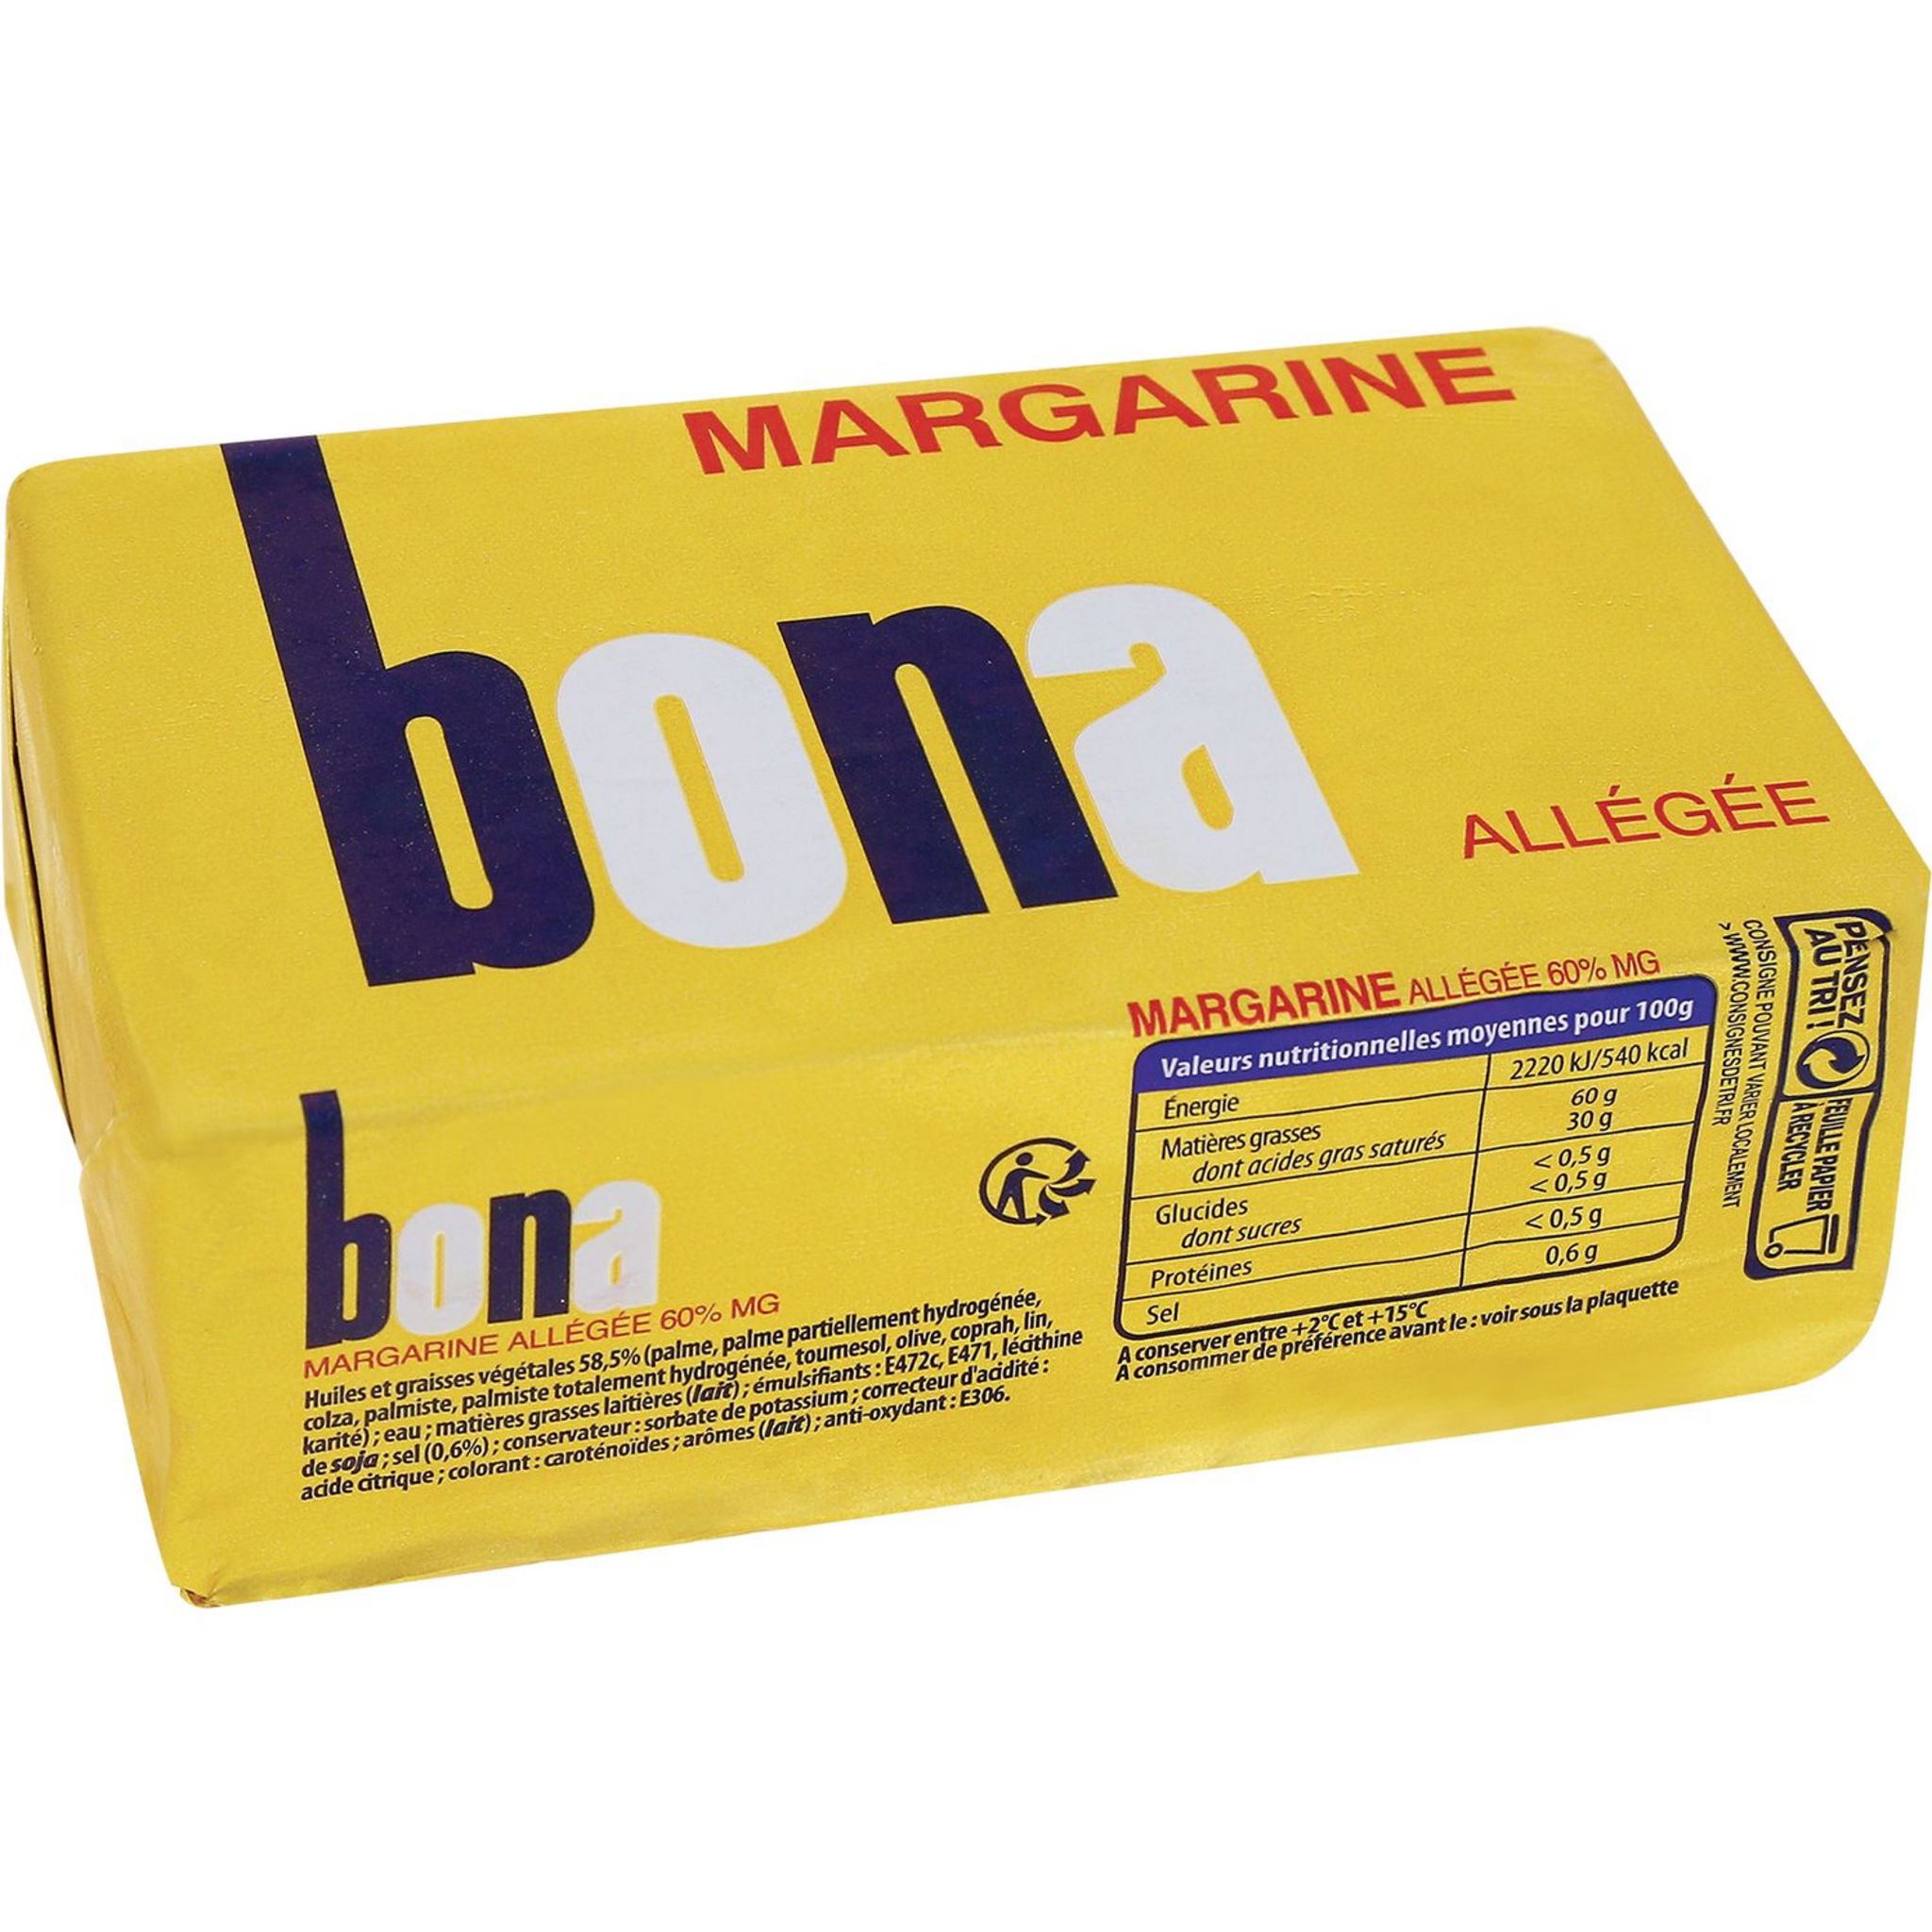 POUCE Margarine de cuisine allégée 60% MG 500g pas cher 